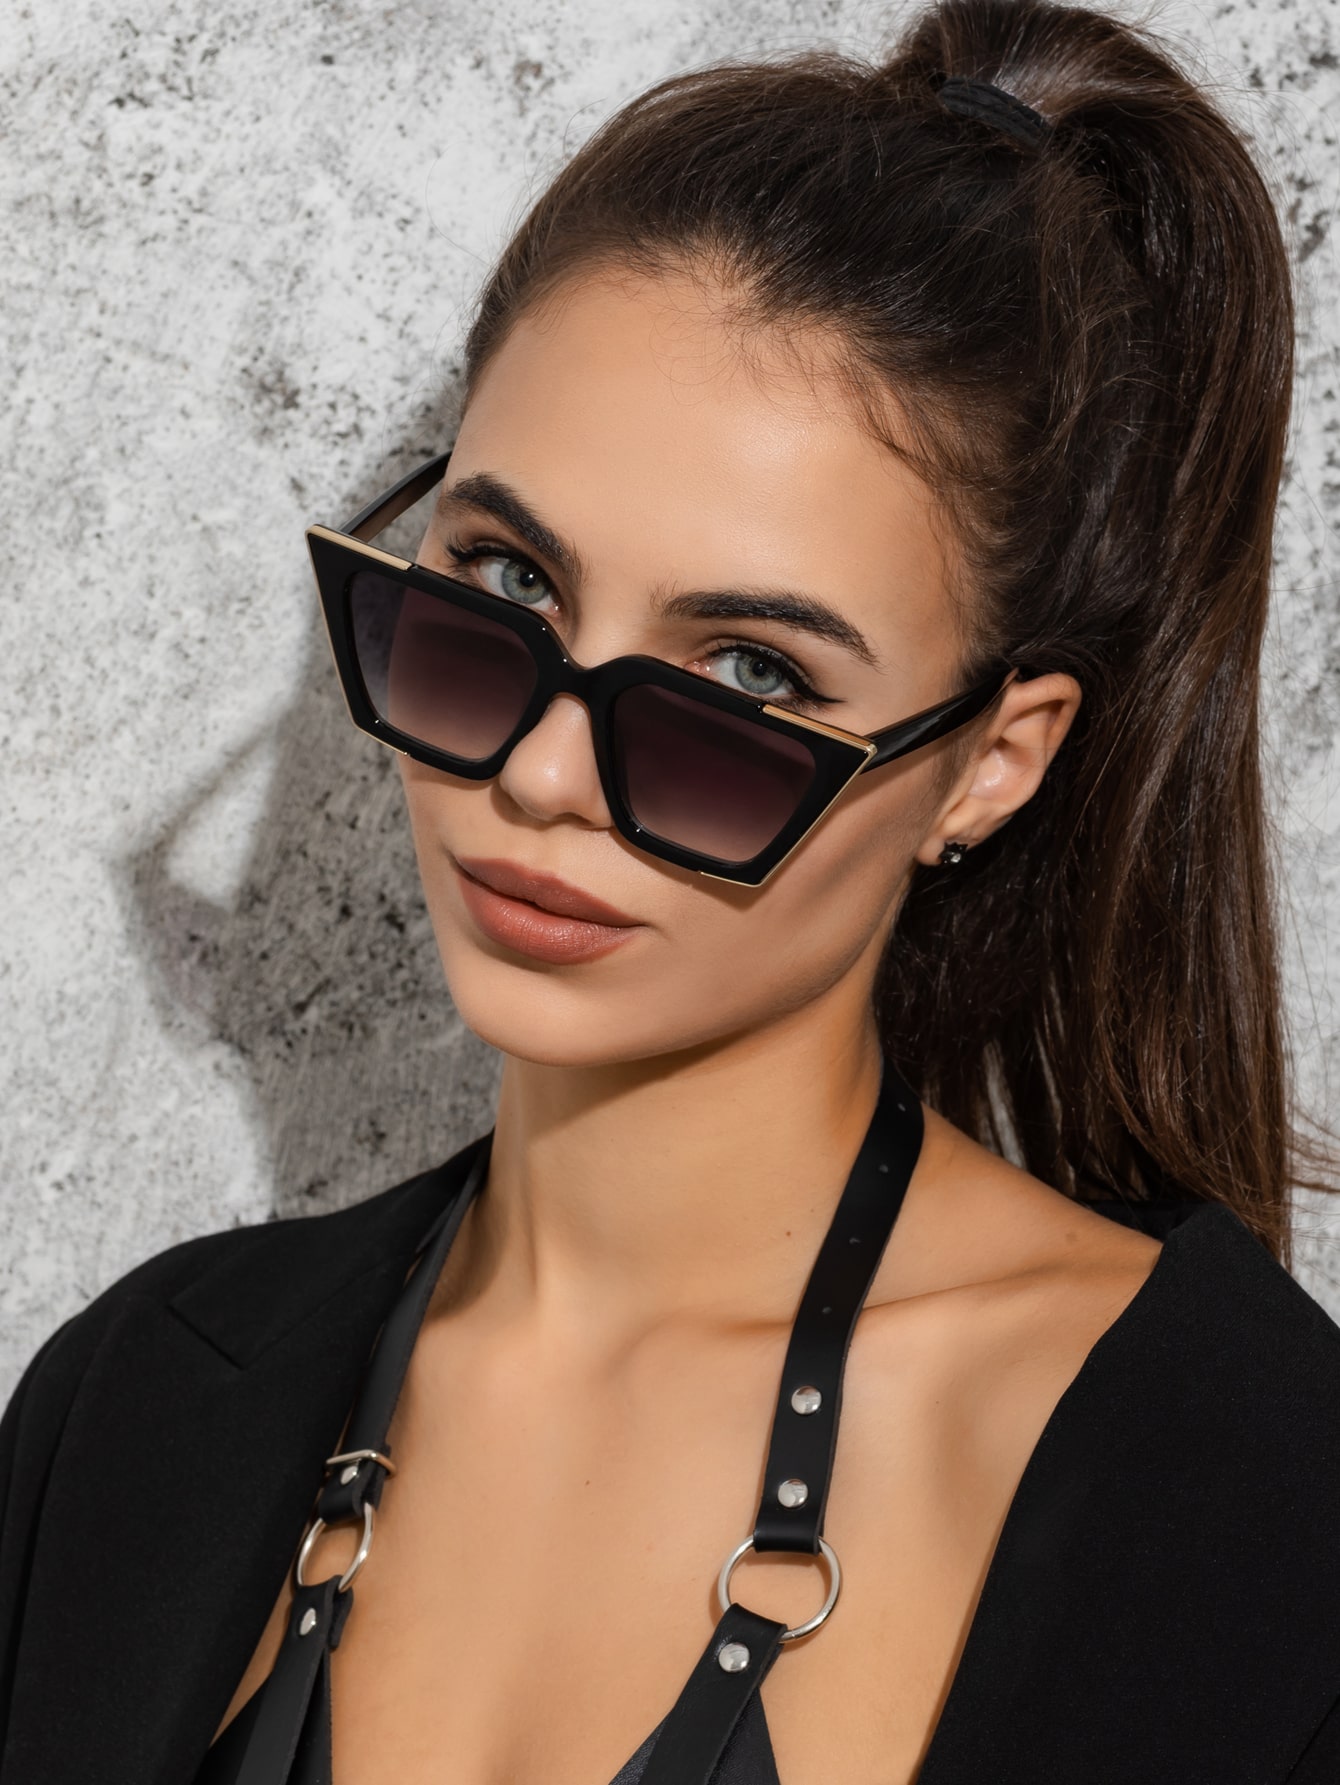 1 шт. женские модные солнцезащитные очки «кошачий глаз» высококачественные очки модные солнцезащитные очки кошачий глаз большие зеркальные женские очки для вечеринок покупок мужские солнцеза